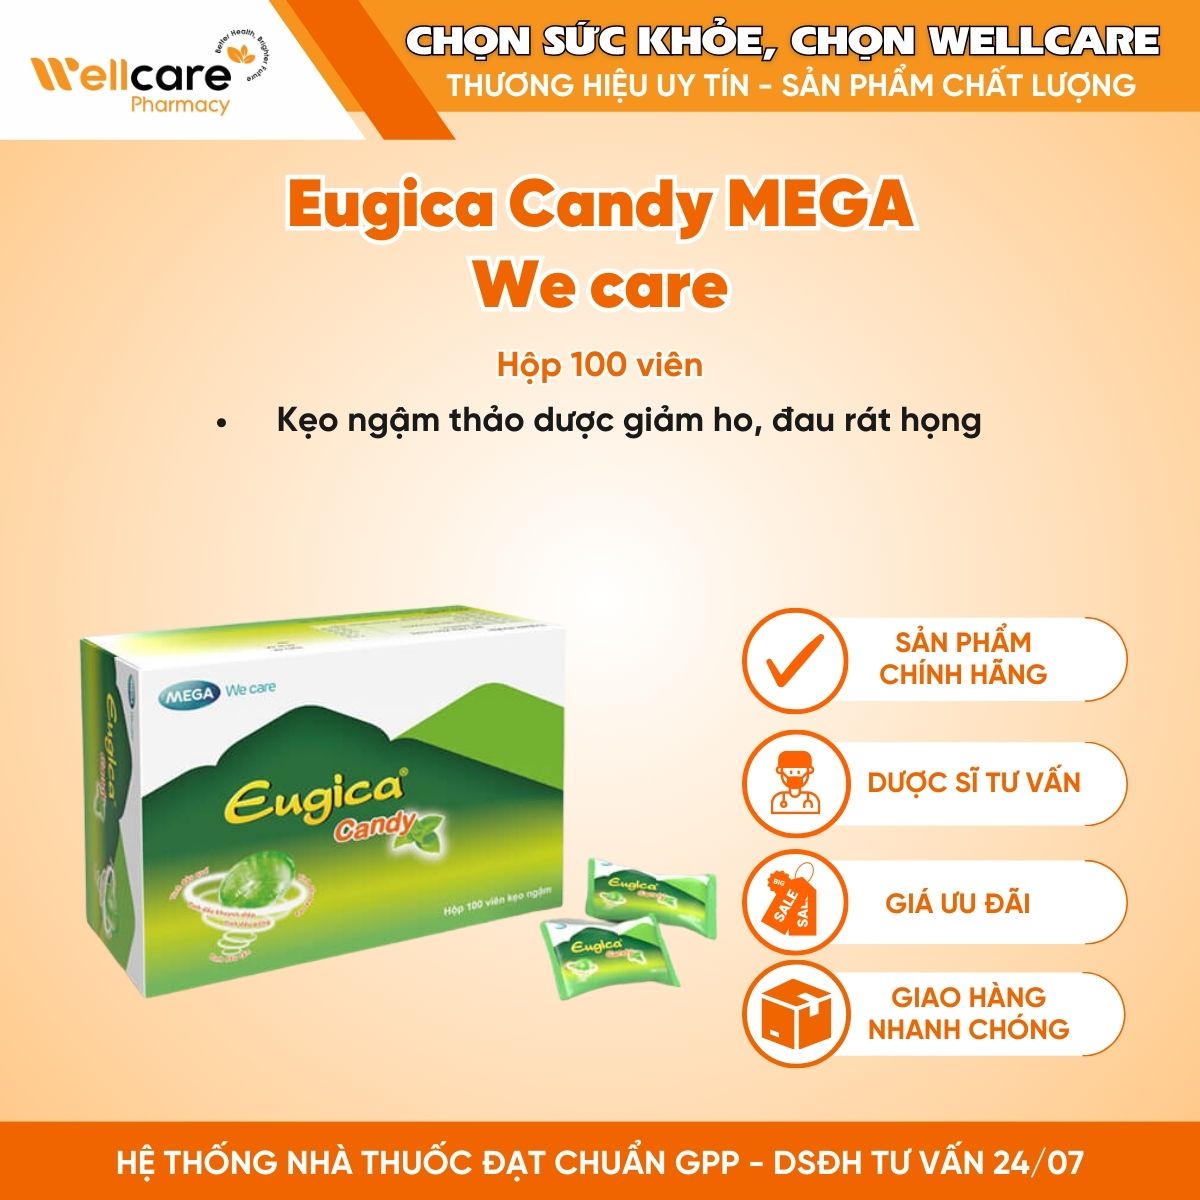 Eugica Candy MEGA We care – Kẹo ngậm thảo dược giảm ho, đau rát họng (Hộp 100 viên)